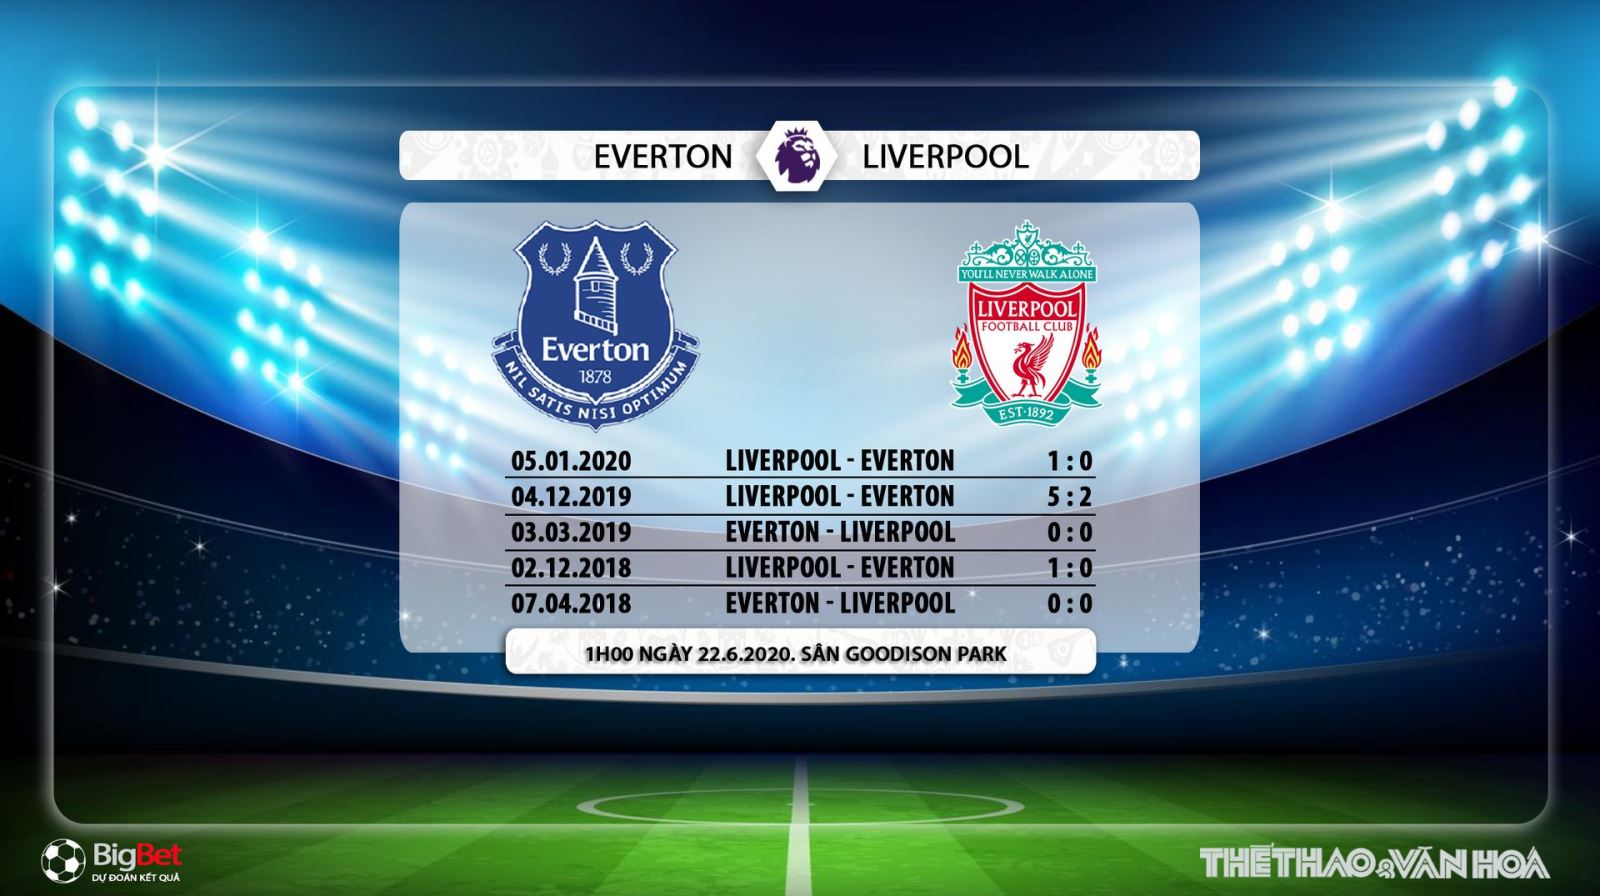 Everton vs Liverpool, Liverpool, Everton, trực tiếp bóng đá, bóng đá, bong da hom nay, bóng đá, ngoại hạng anh